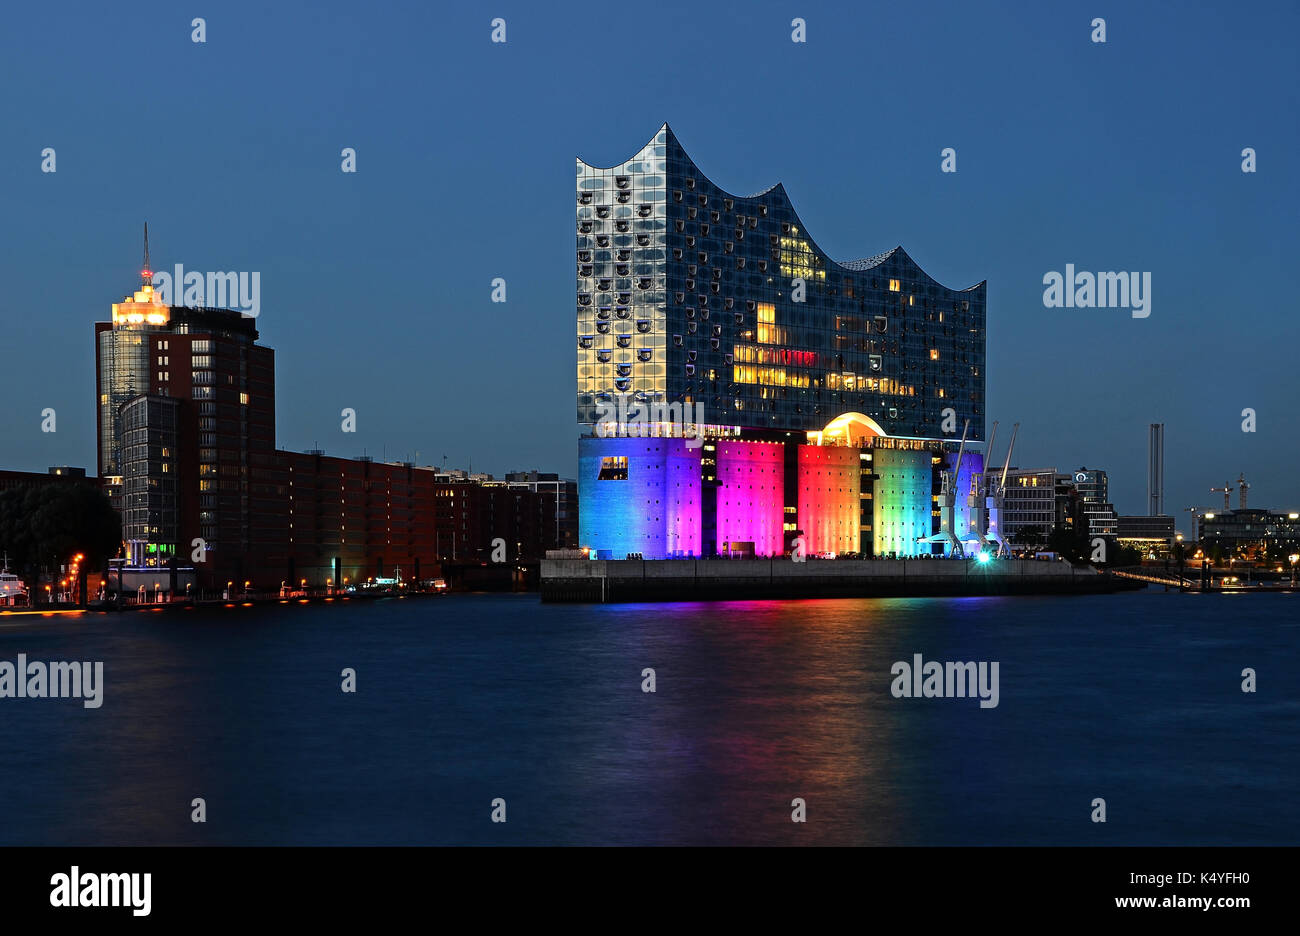 Elbphilharmonie, elbe philharmonic hall iluminado en los colores del arco iris, Hamburgo, Alemania. Foto de stock